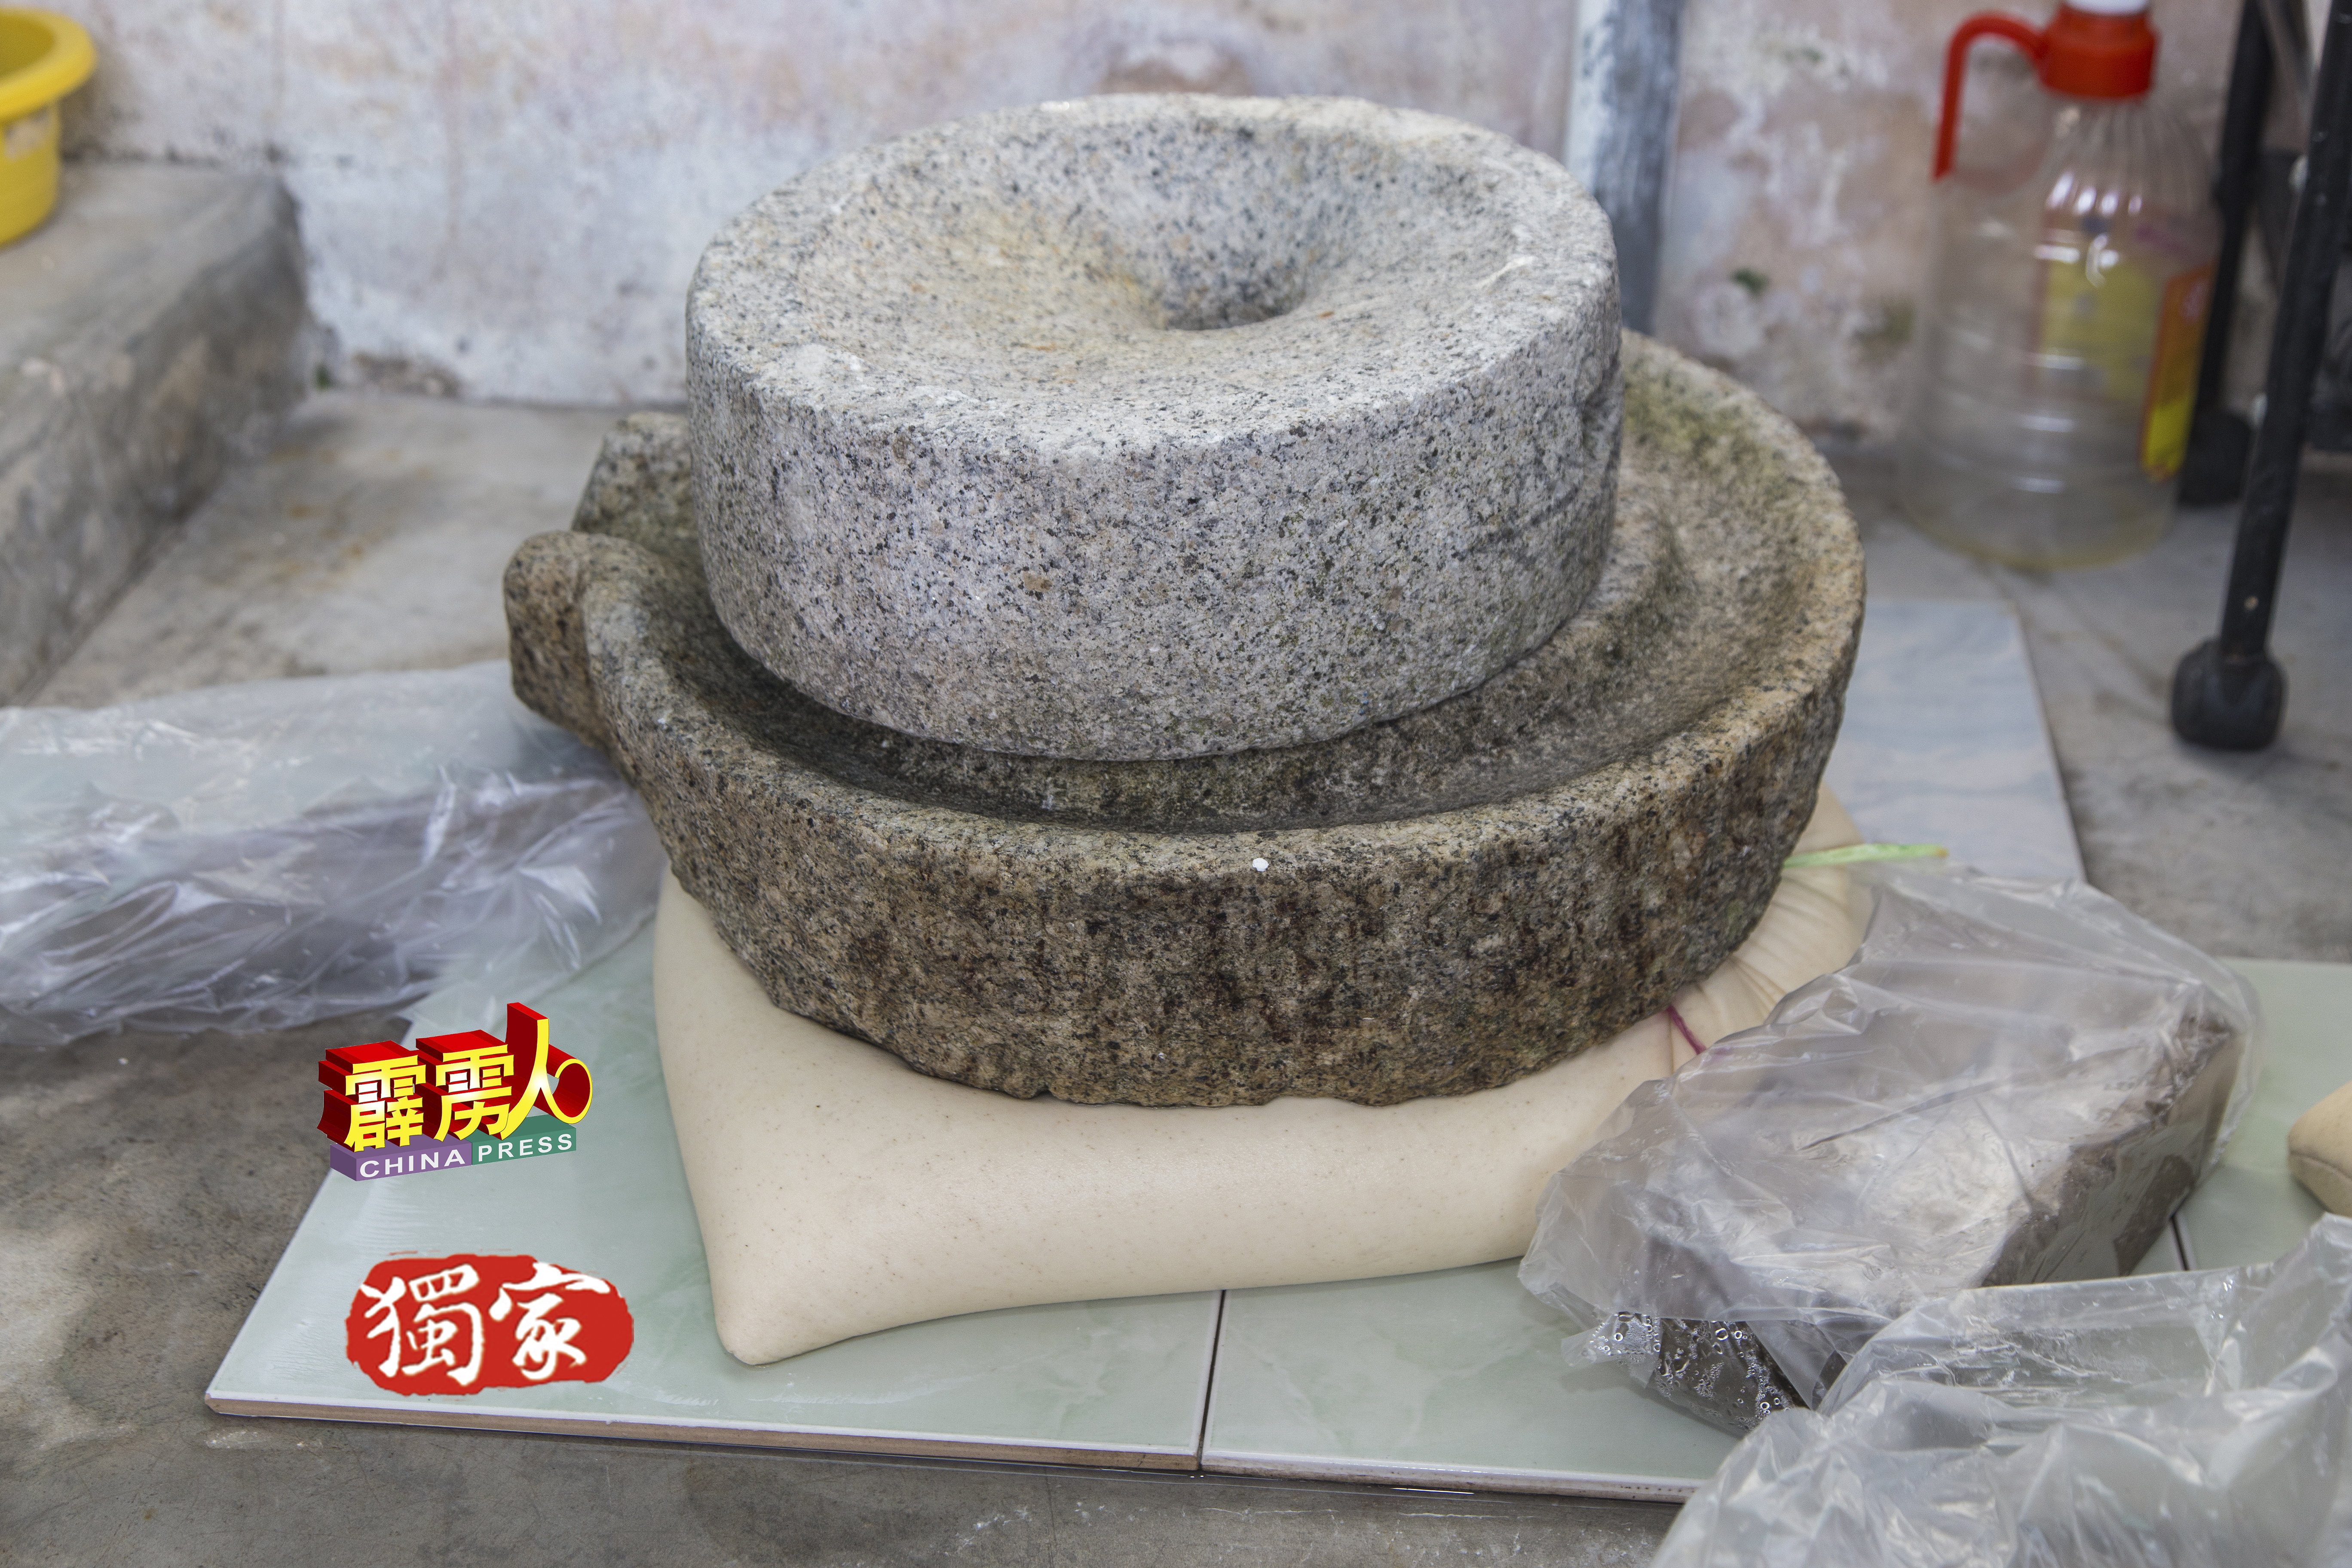 盛满糯米浆的麻袋，被石麻紧压，以便沥干水分，才能进行下一步工序。这点跟製作豆腐极为相似。